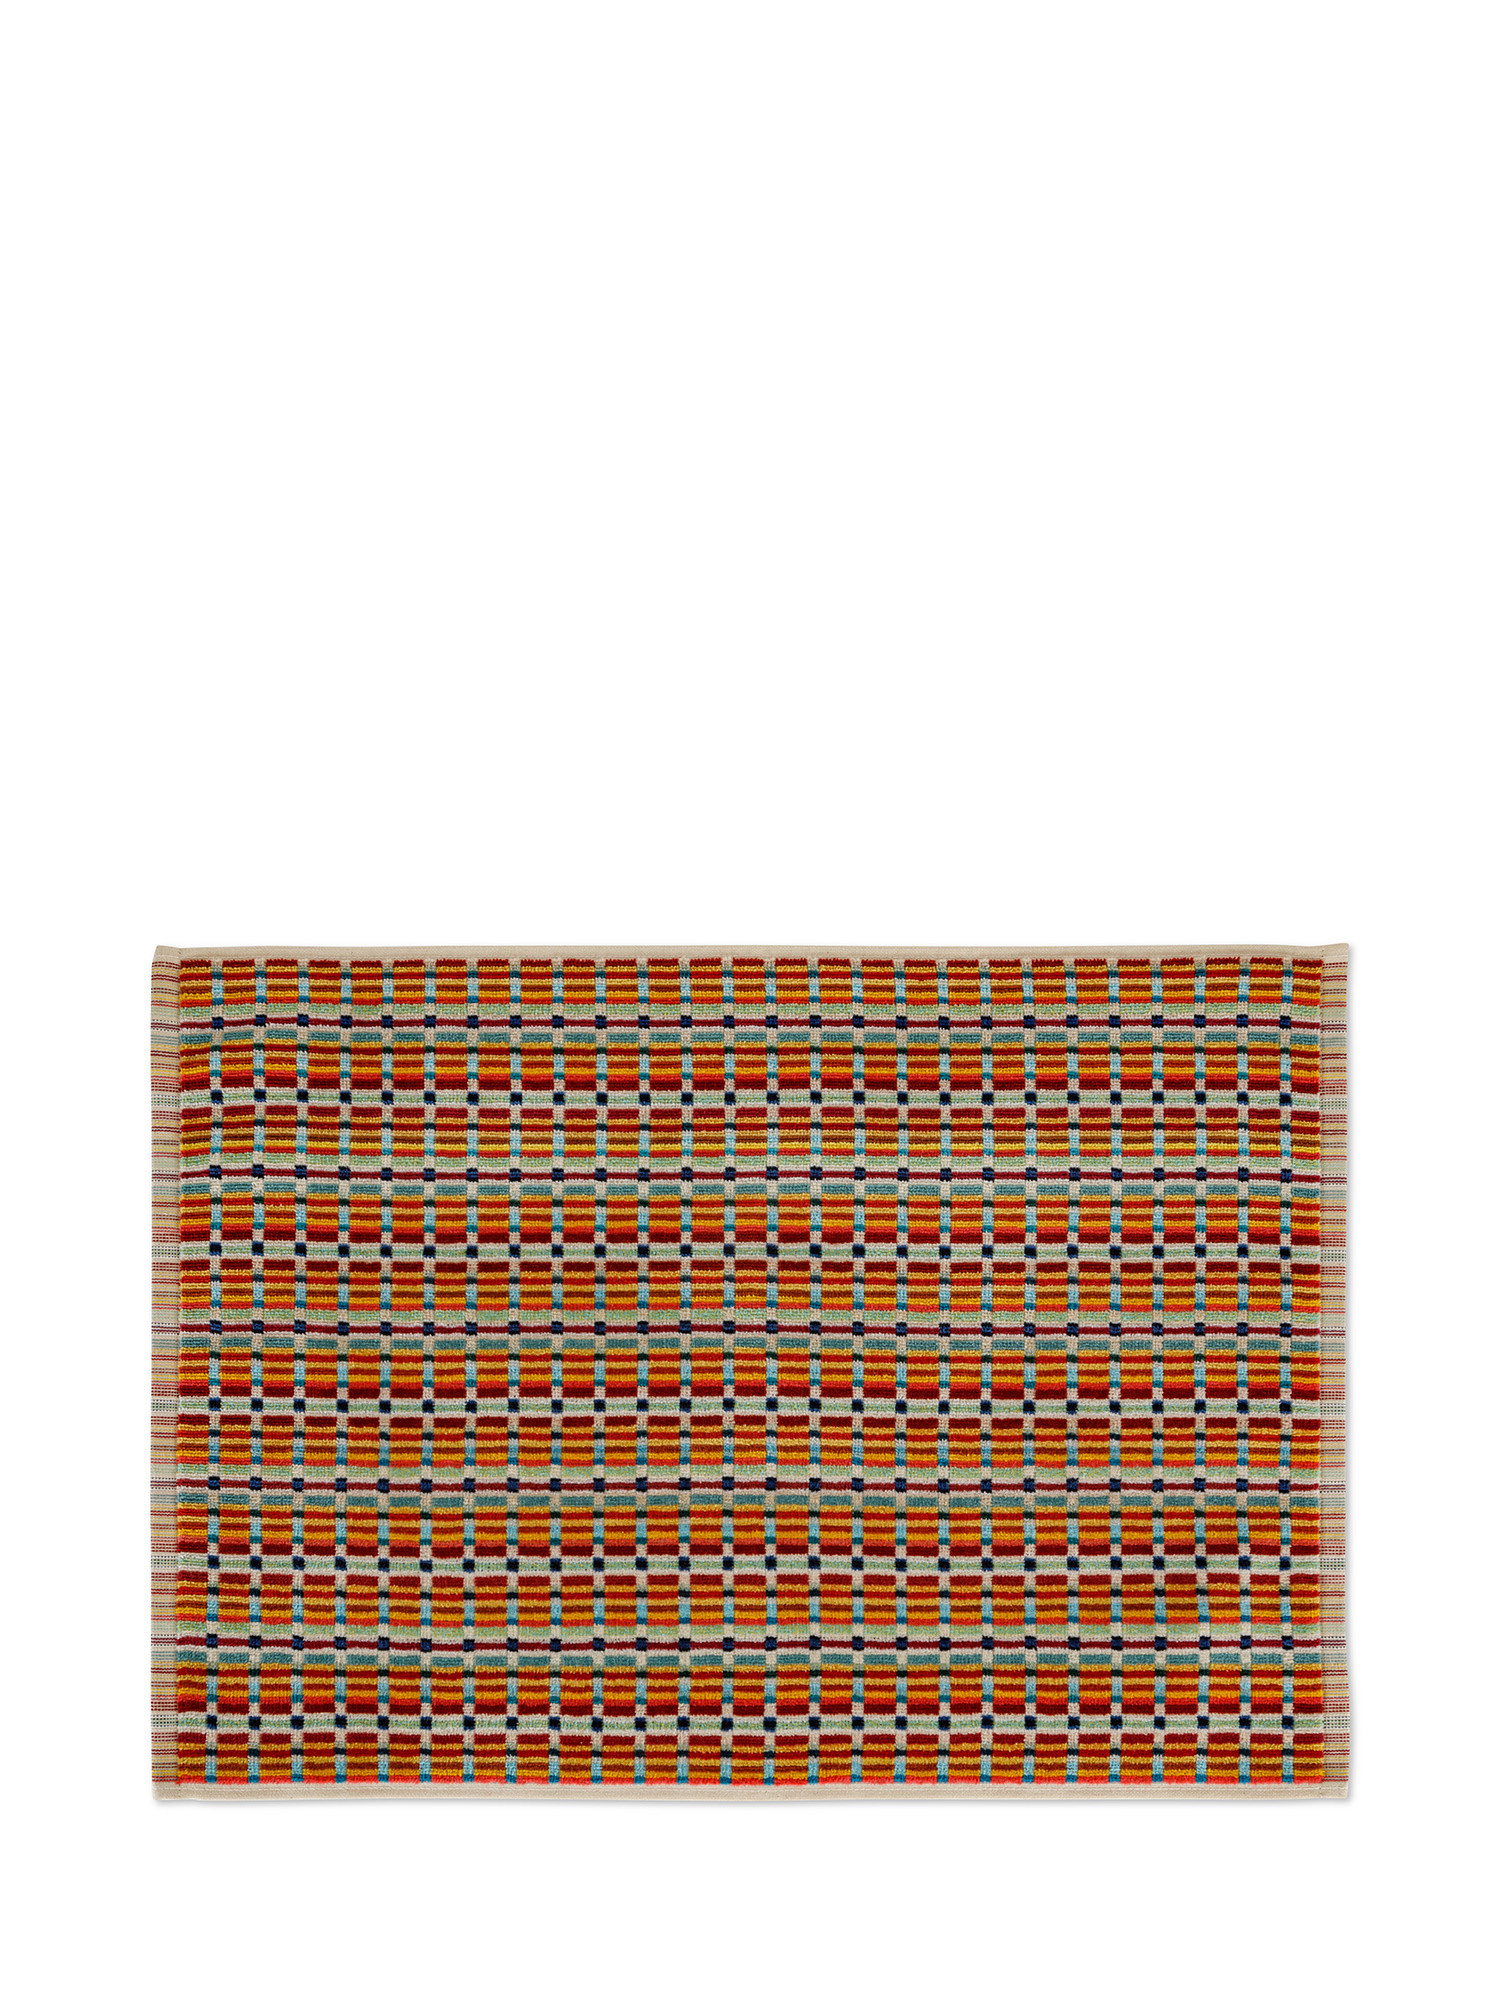 Asciugamano in velour di puro cotone tinto in filo con fantasia geometrica, Multicolor, large image number 1